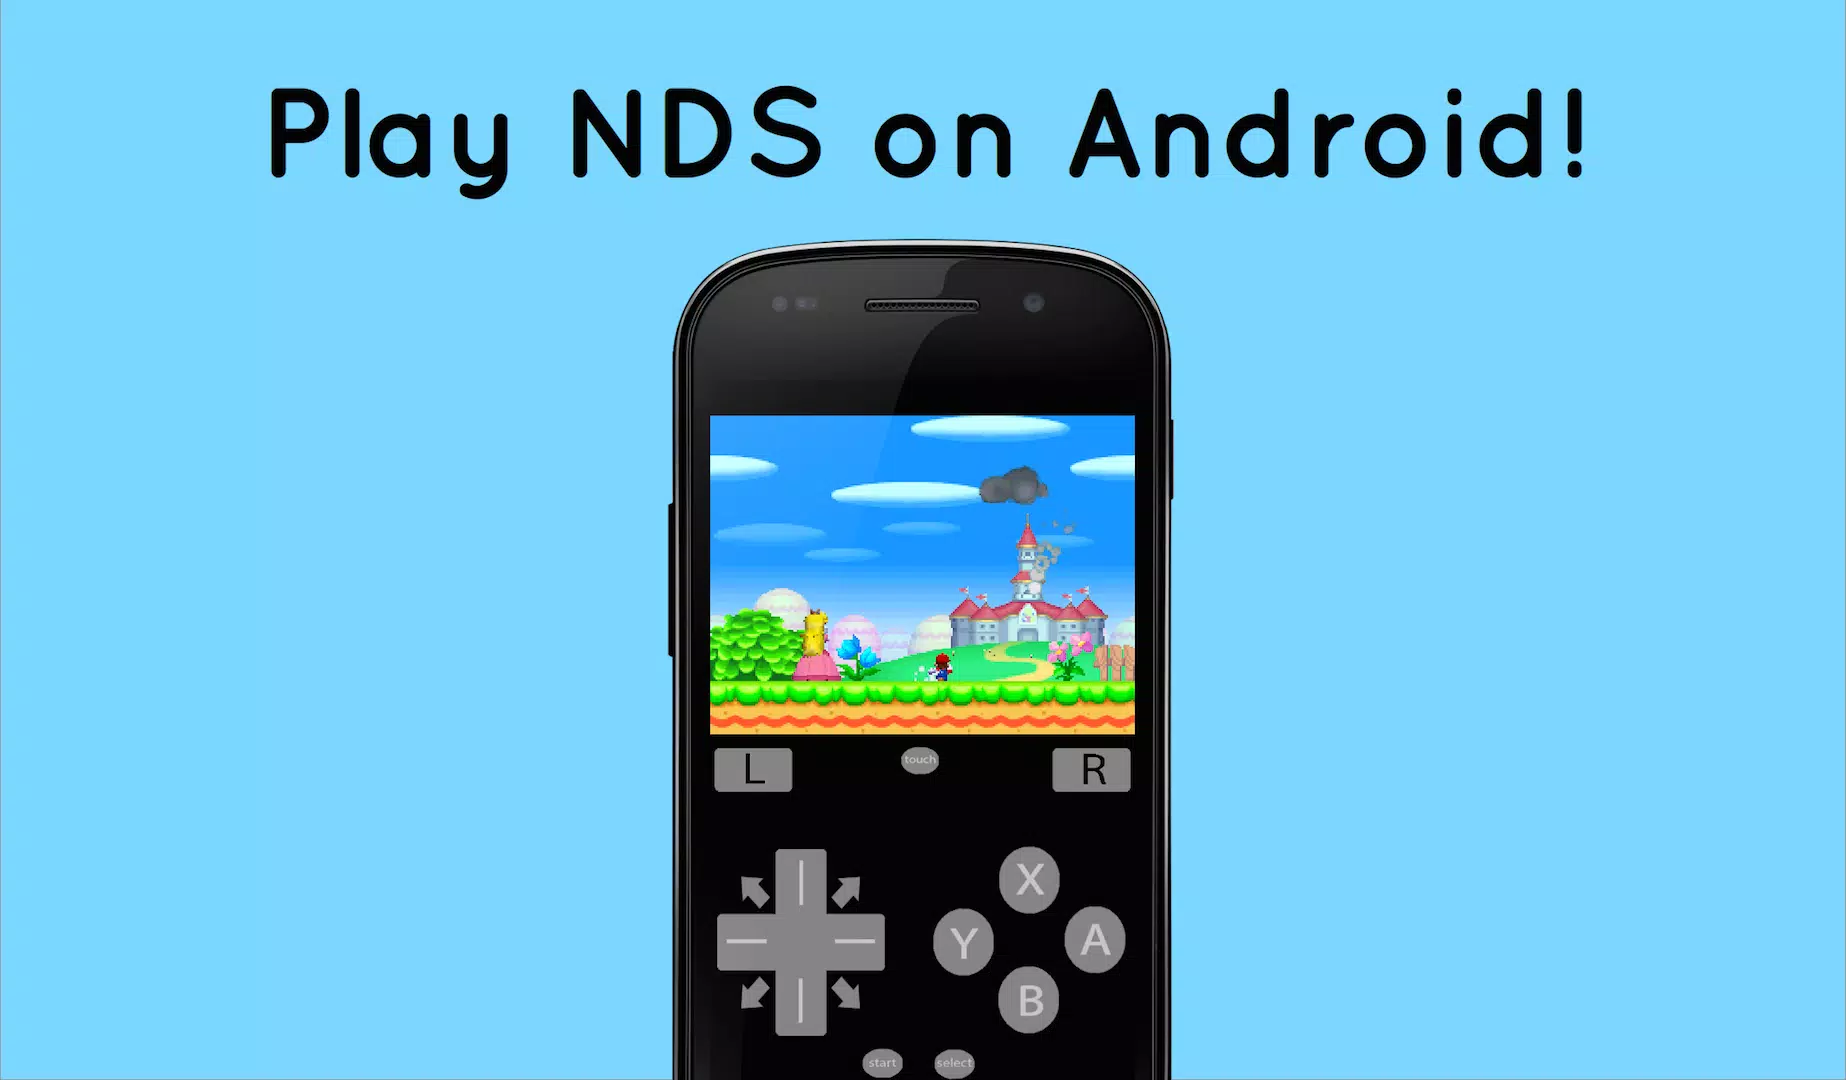 Android向けのCoolNDS (Nintendo DS Emulator) APKをダウンロードしましょう